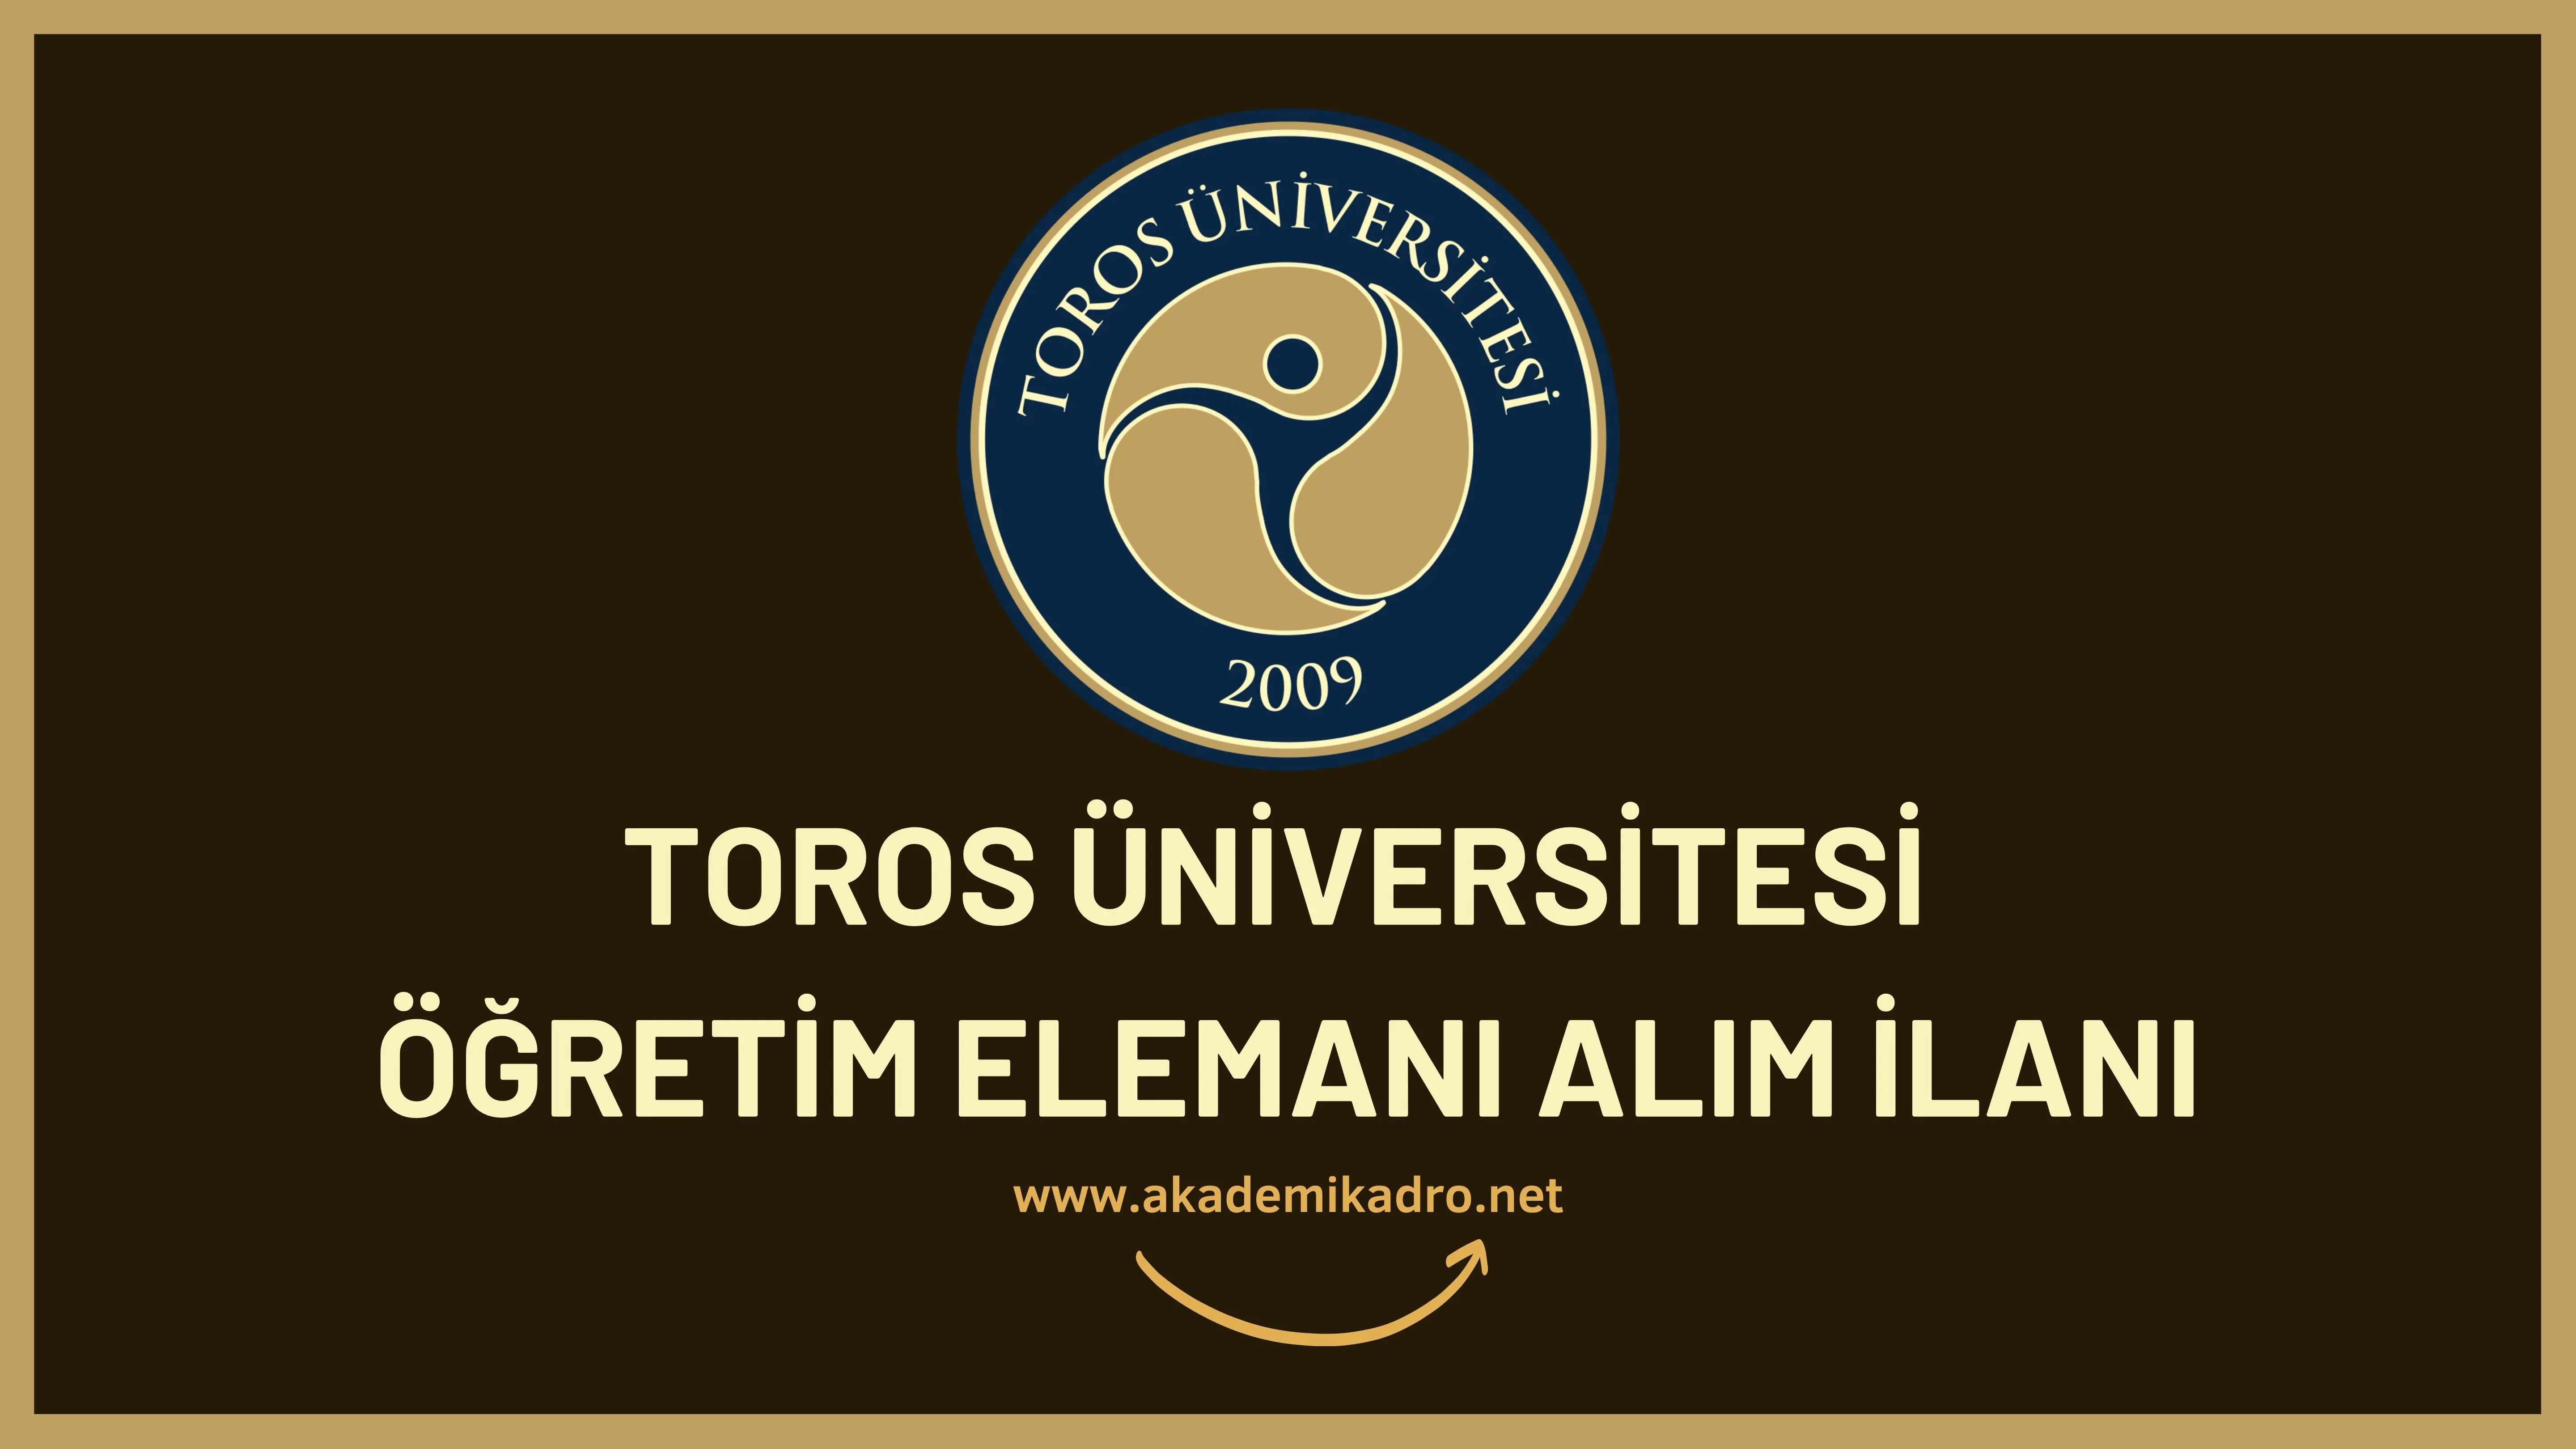 Toros Üniversitesi 13 öğretim üyesi ve 2 Araştırma görevlisi alacaktır.